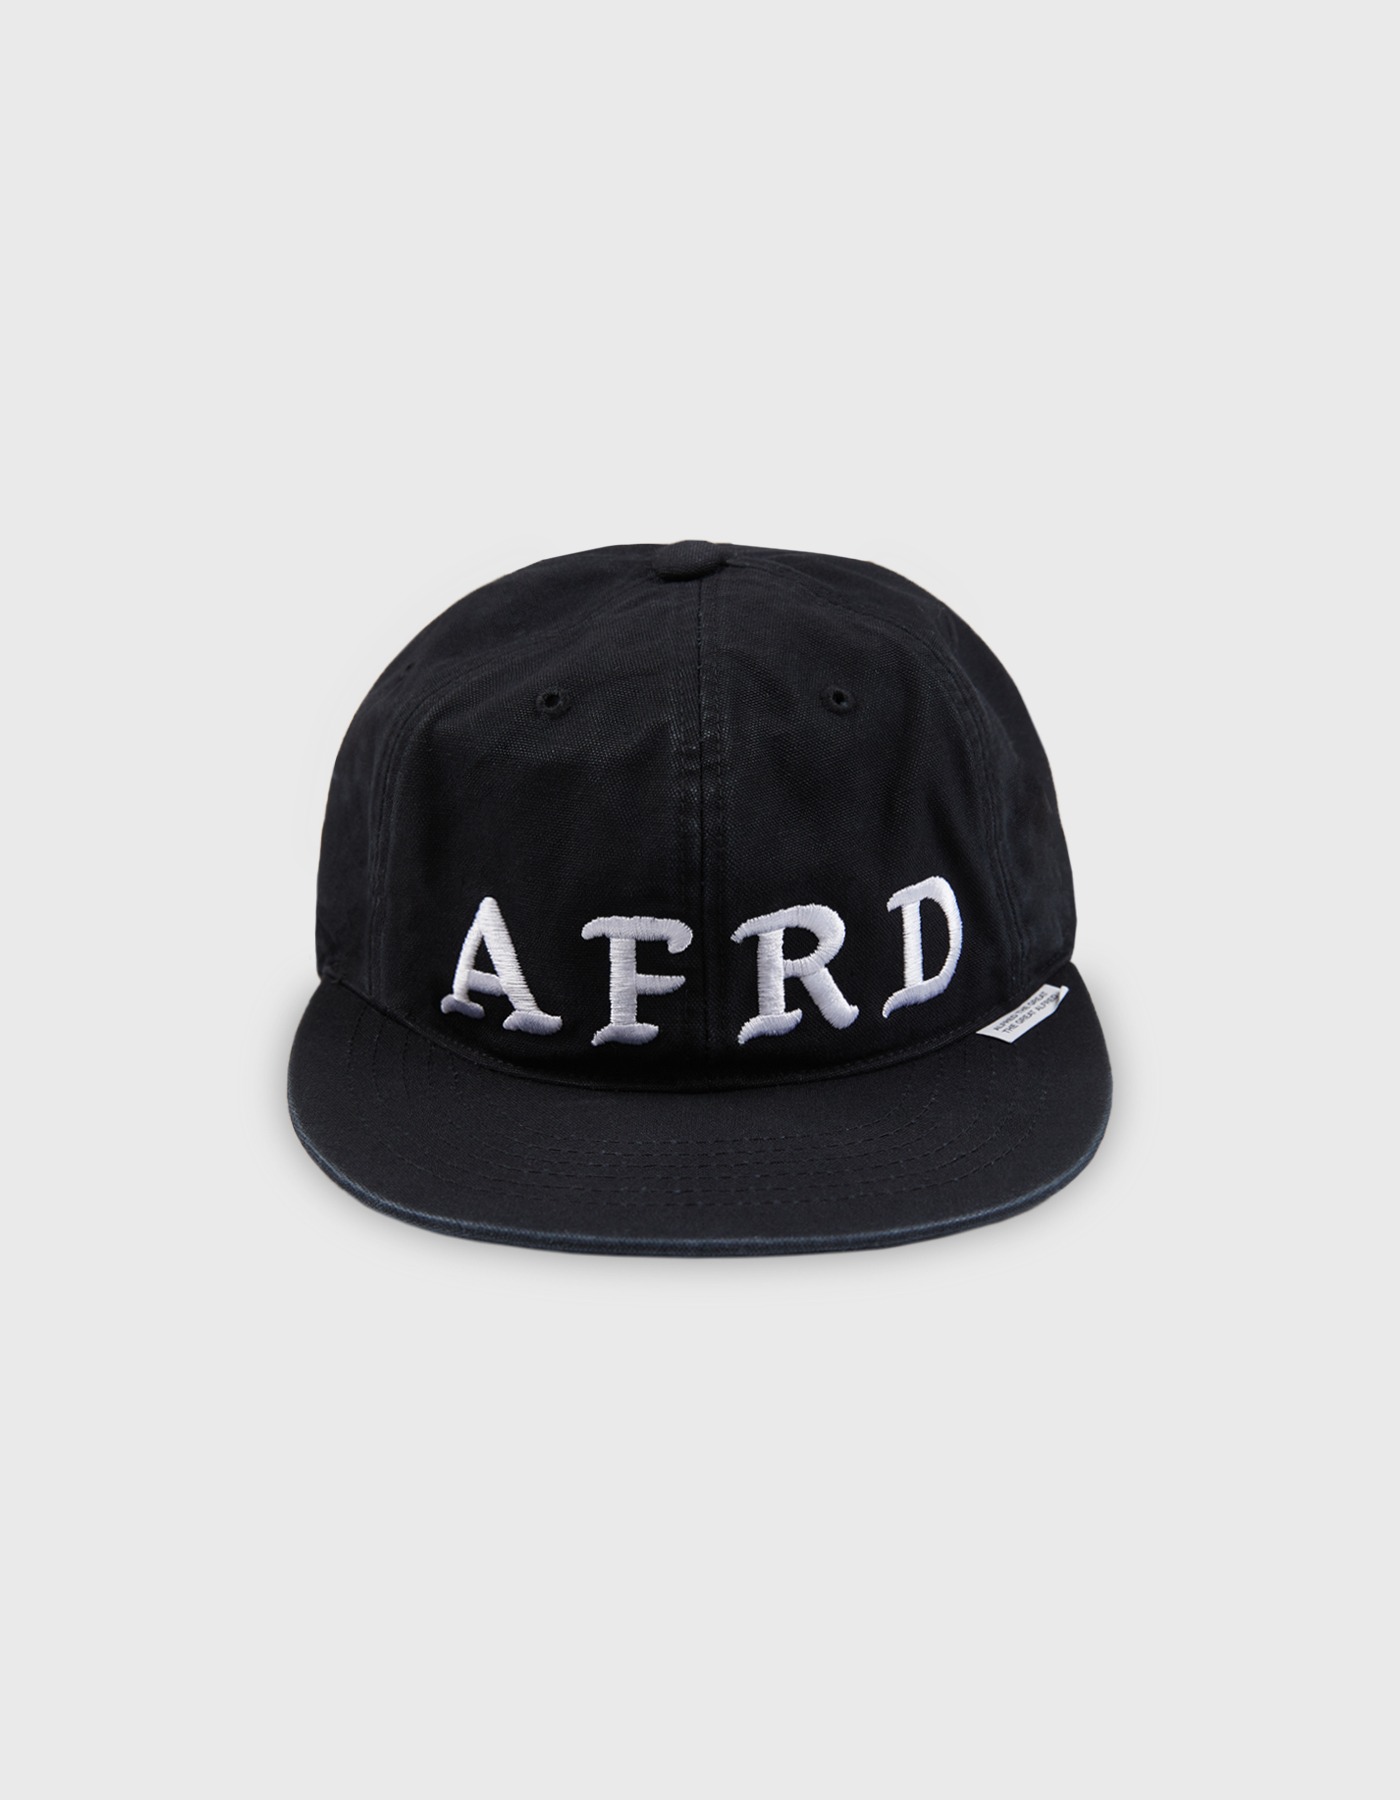 AFRD CAP / Black